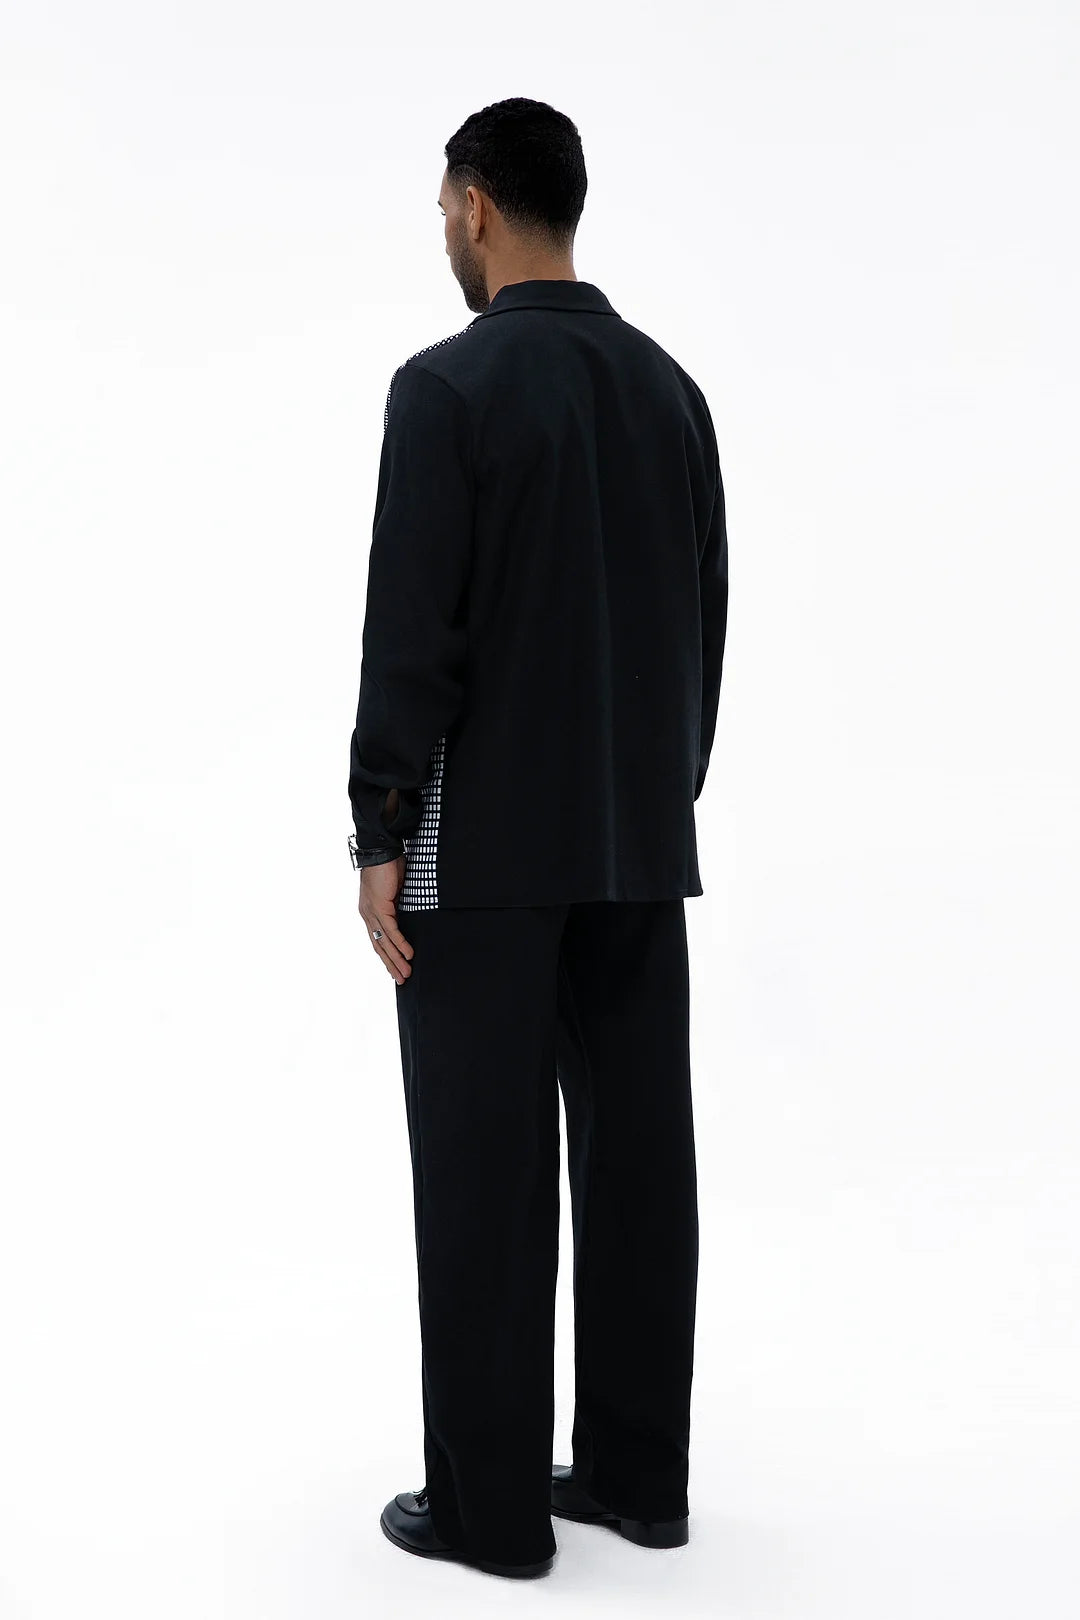 Autumn Black Line Two-Piece Walking Suit - DUVAL